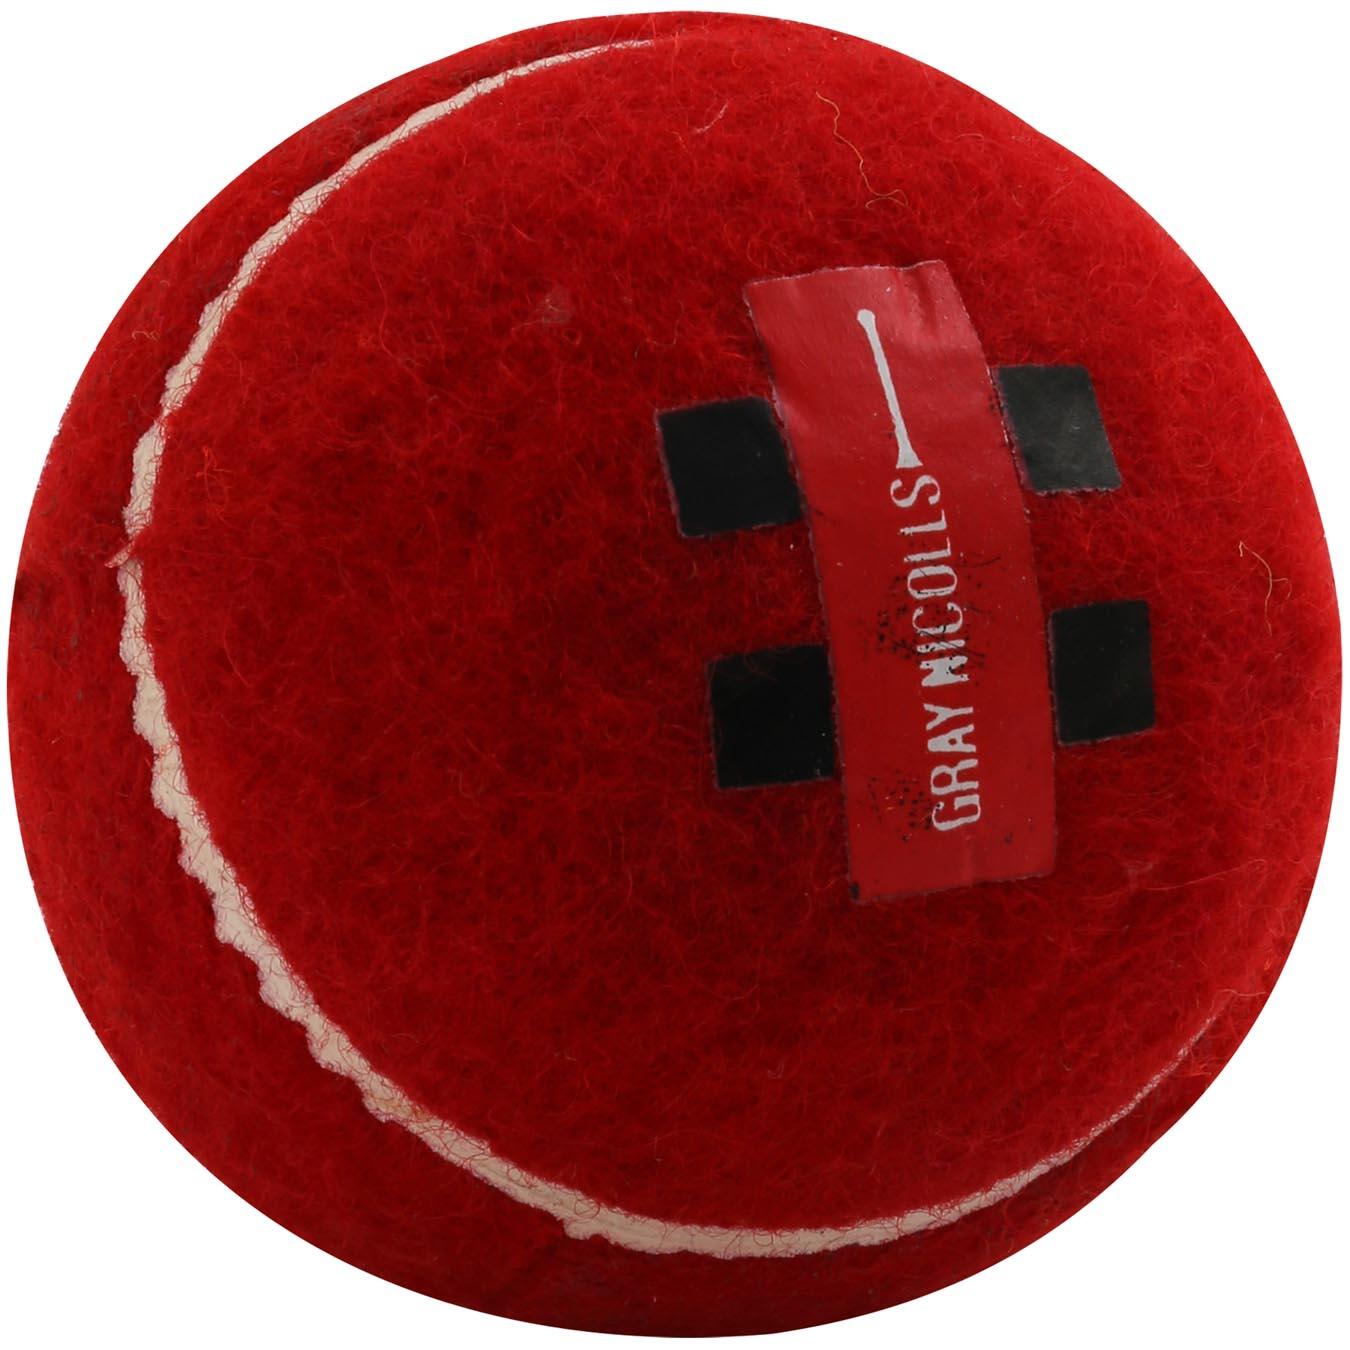 GRAY-NICOLLS Tennis Ball,Red